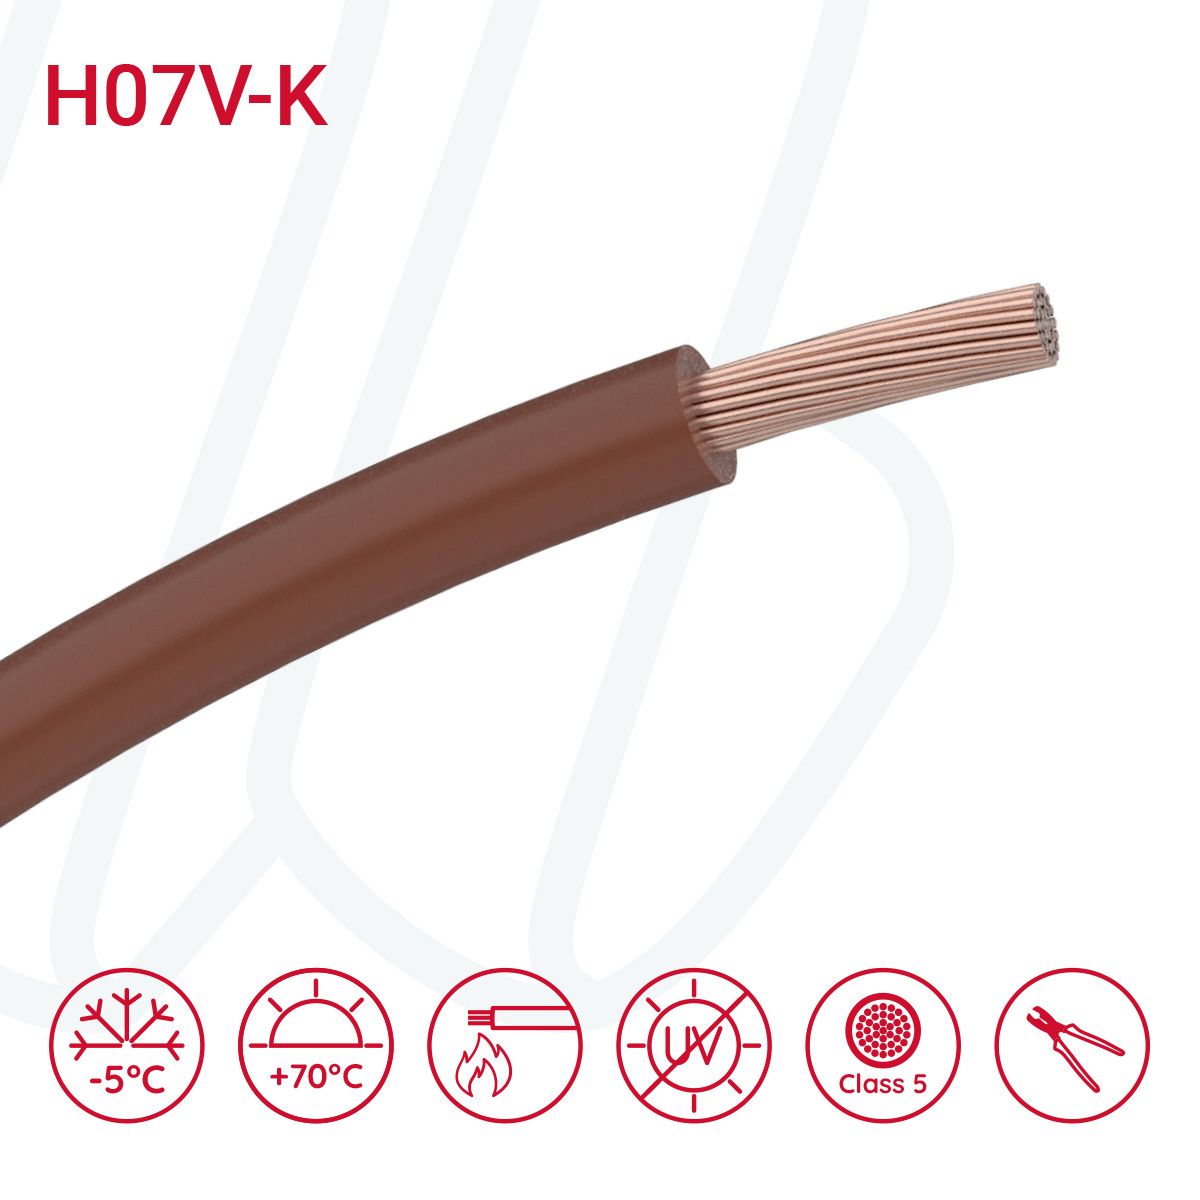 Провід монтажний гнучкий H07V-K 10 мм² коричневий, 01, 10